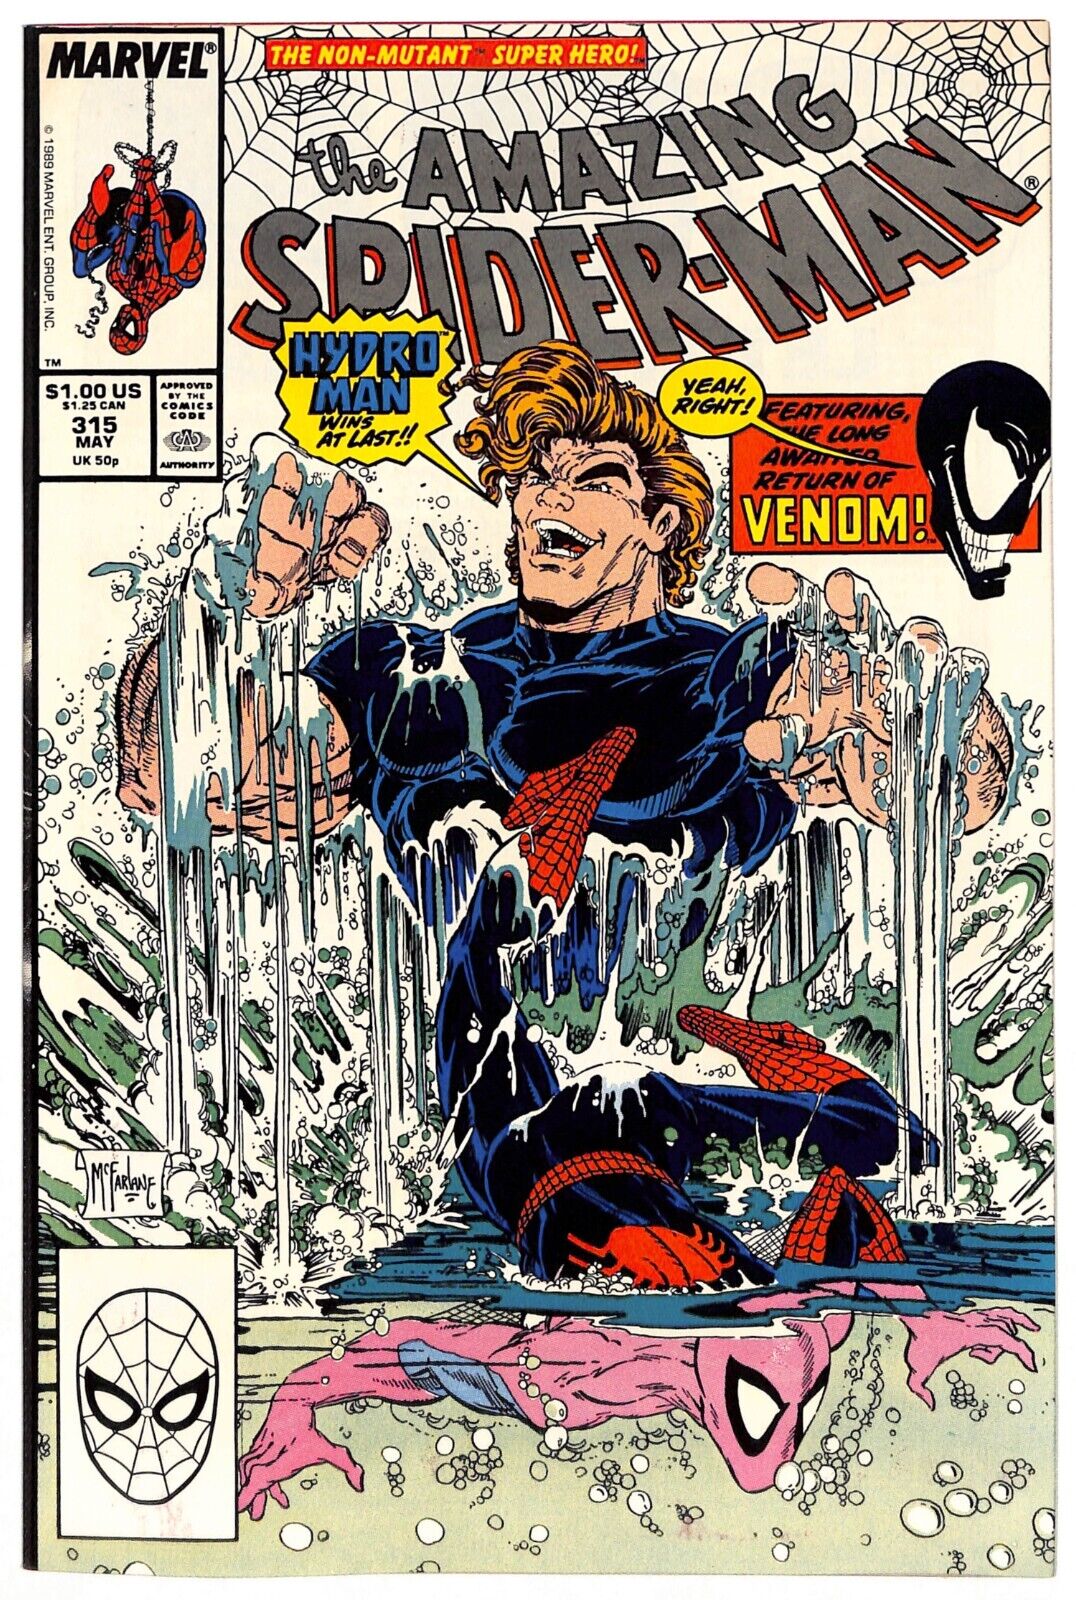 Amazing Spider-Man #315 (9.0)